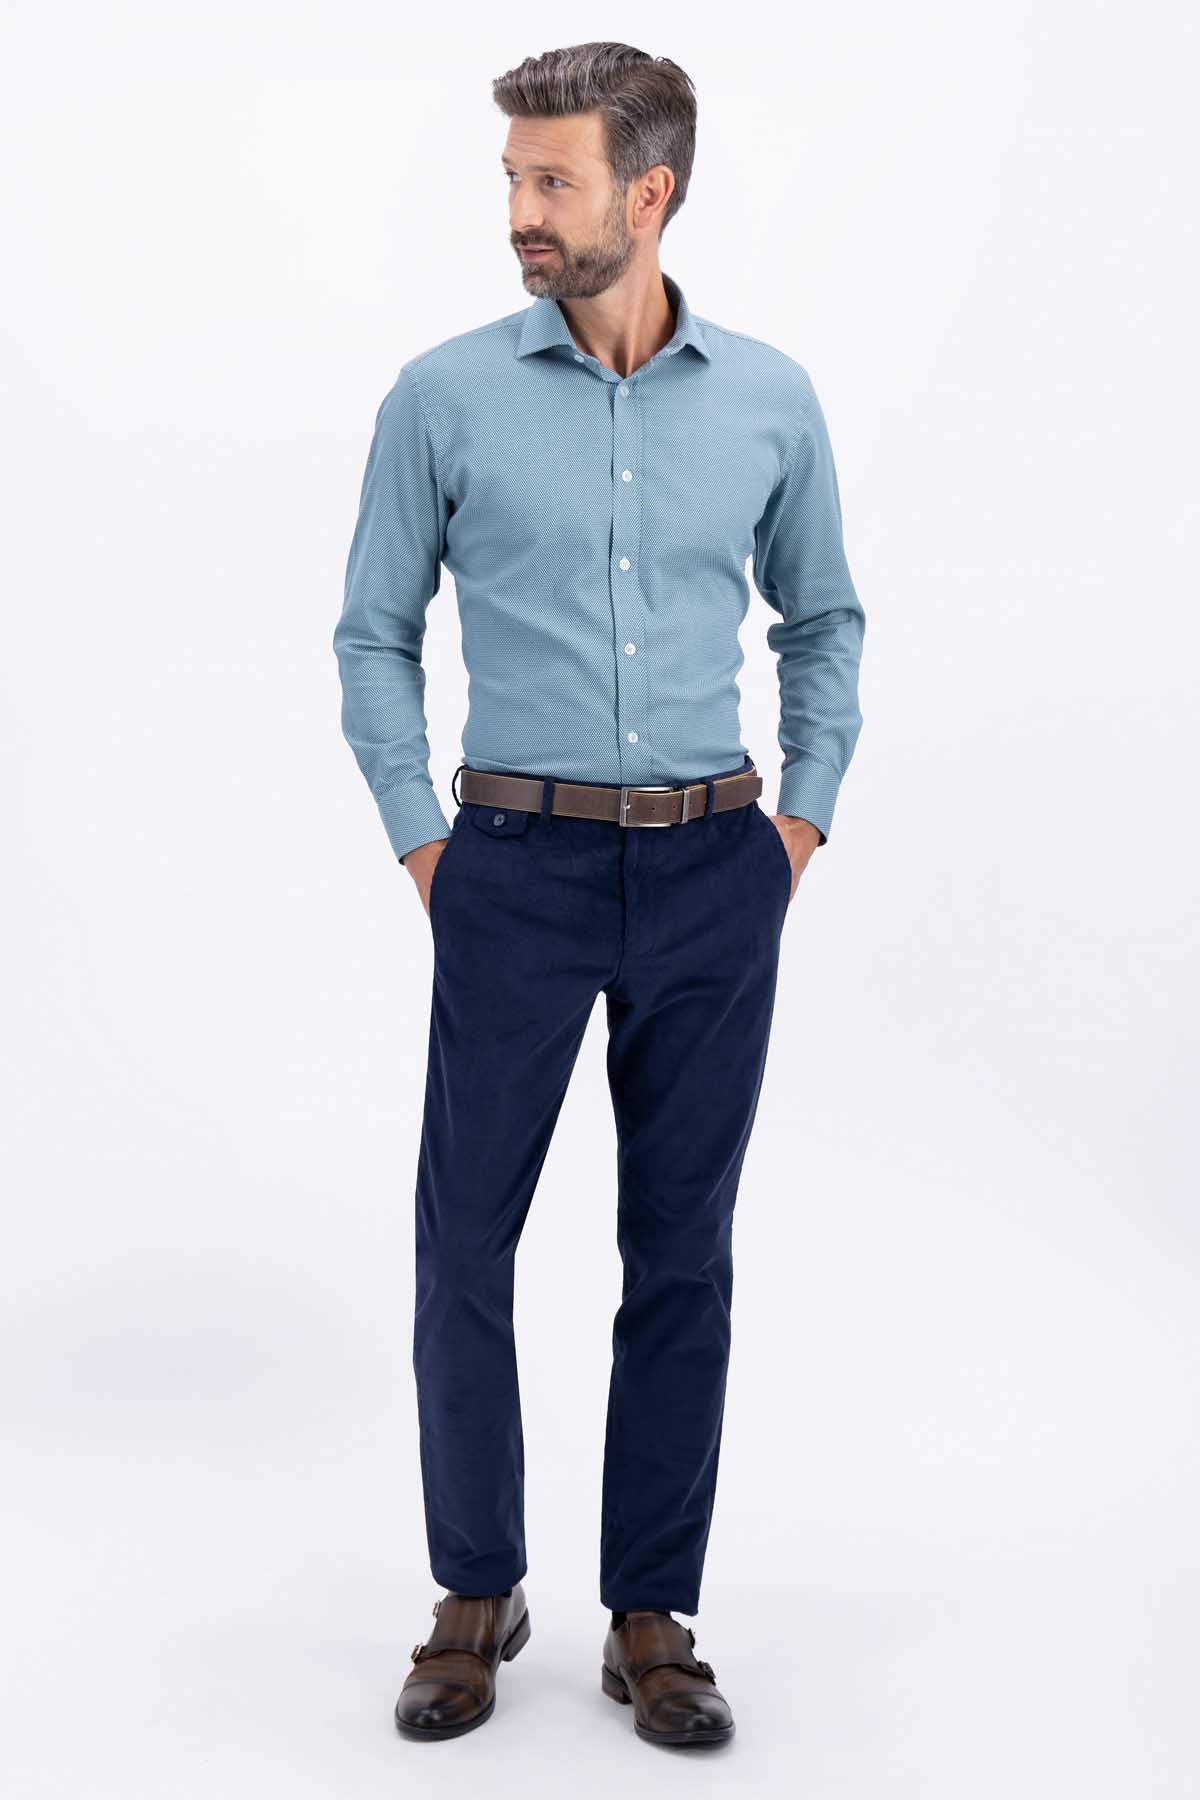 Pantalones Mc Allen disponibles! #pantalones #moda #hombre #caballero  #mezclilla #tela #fina #negro #azul #vaqueros #recto #men #fashion